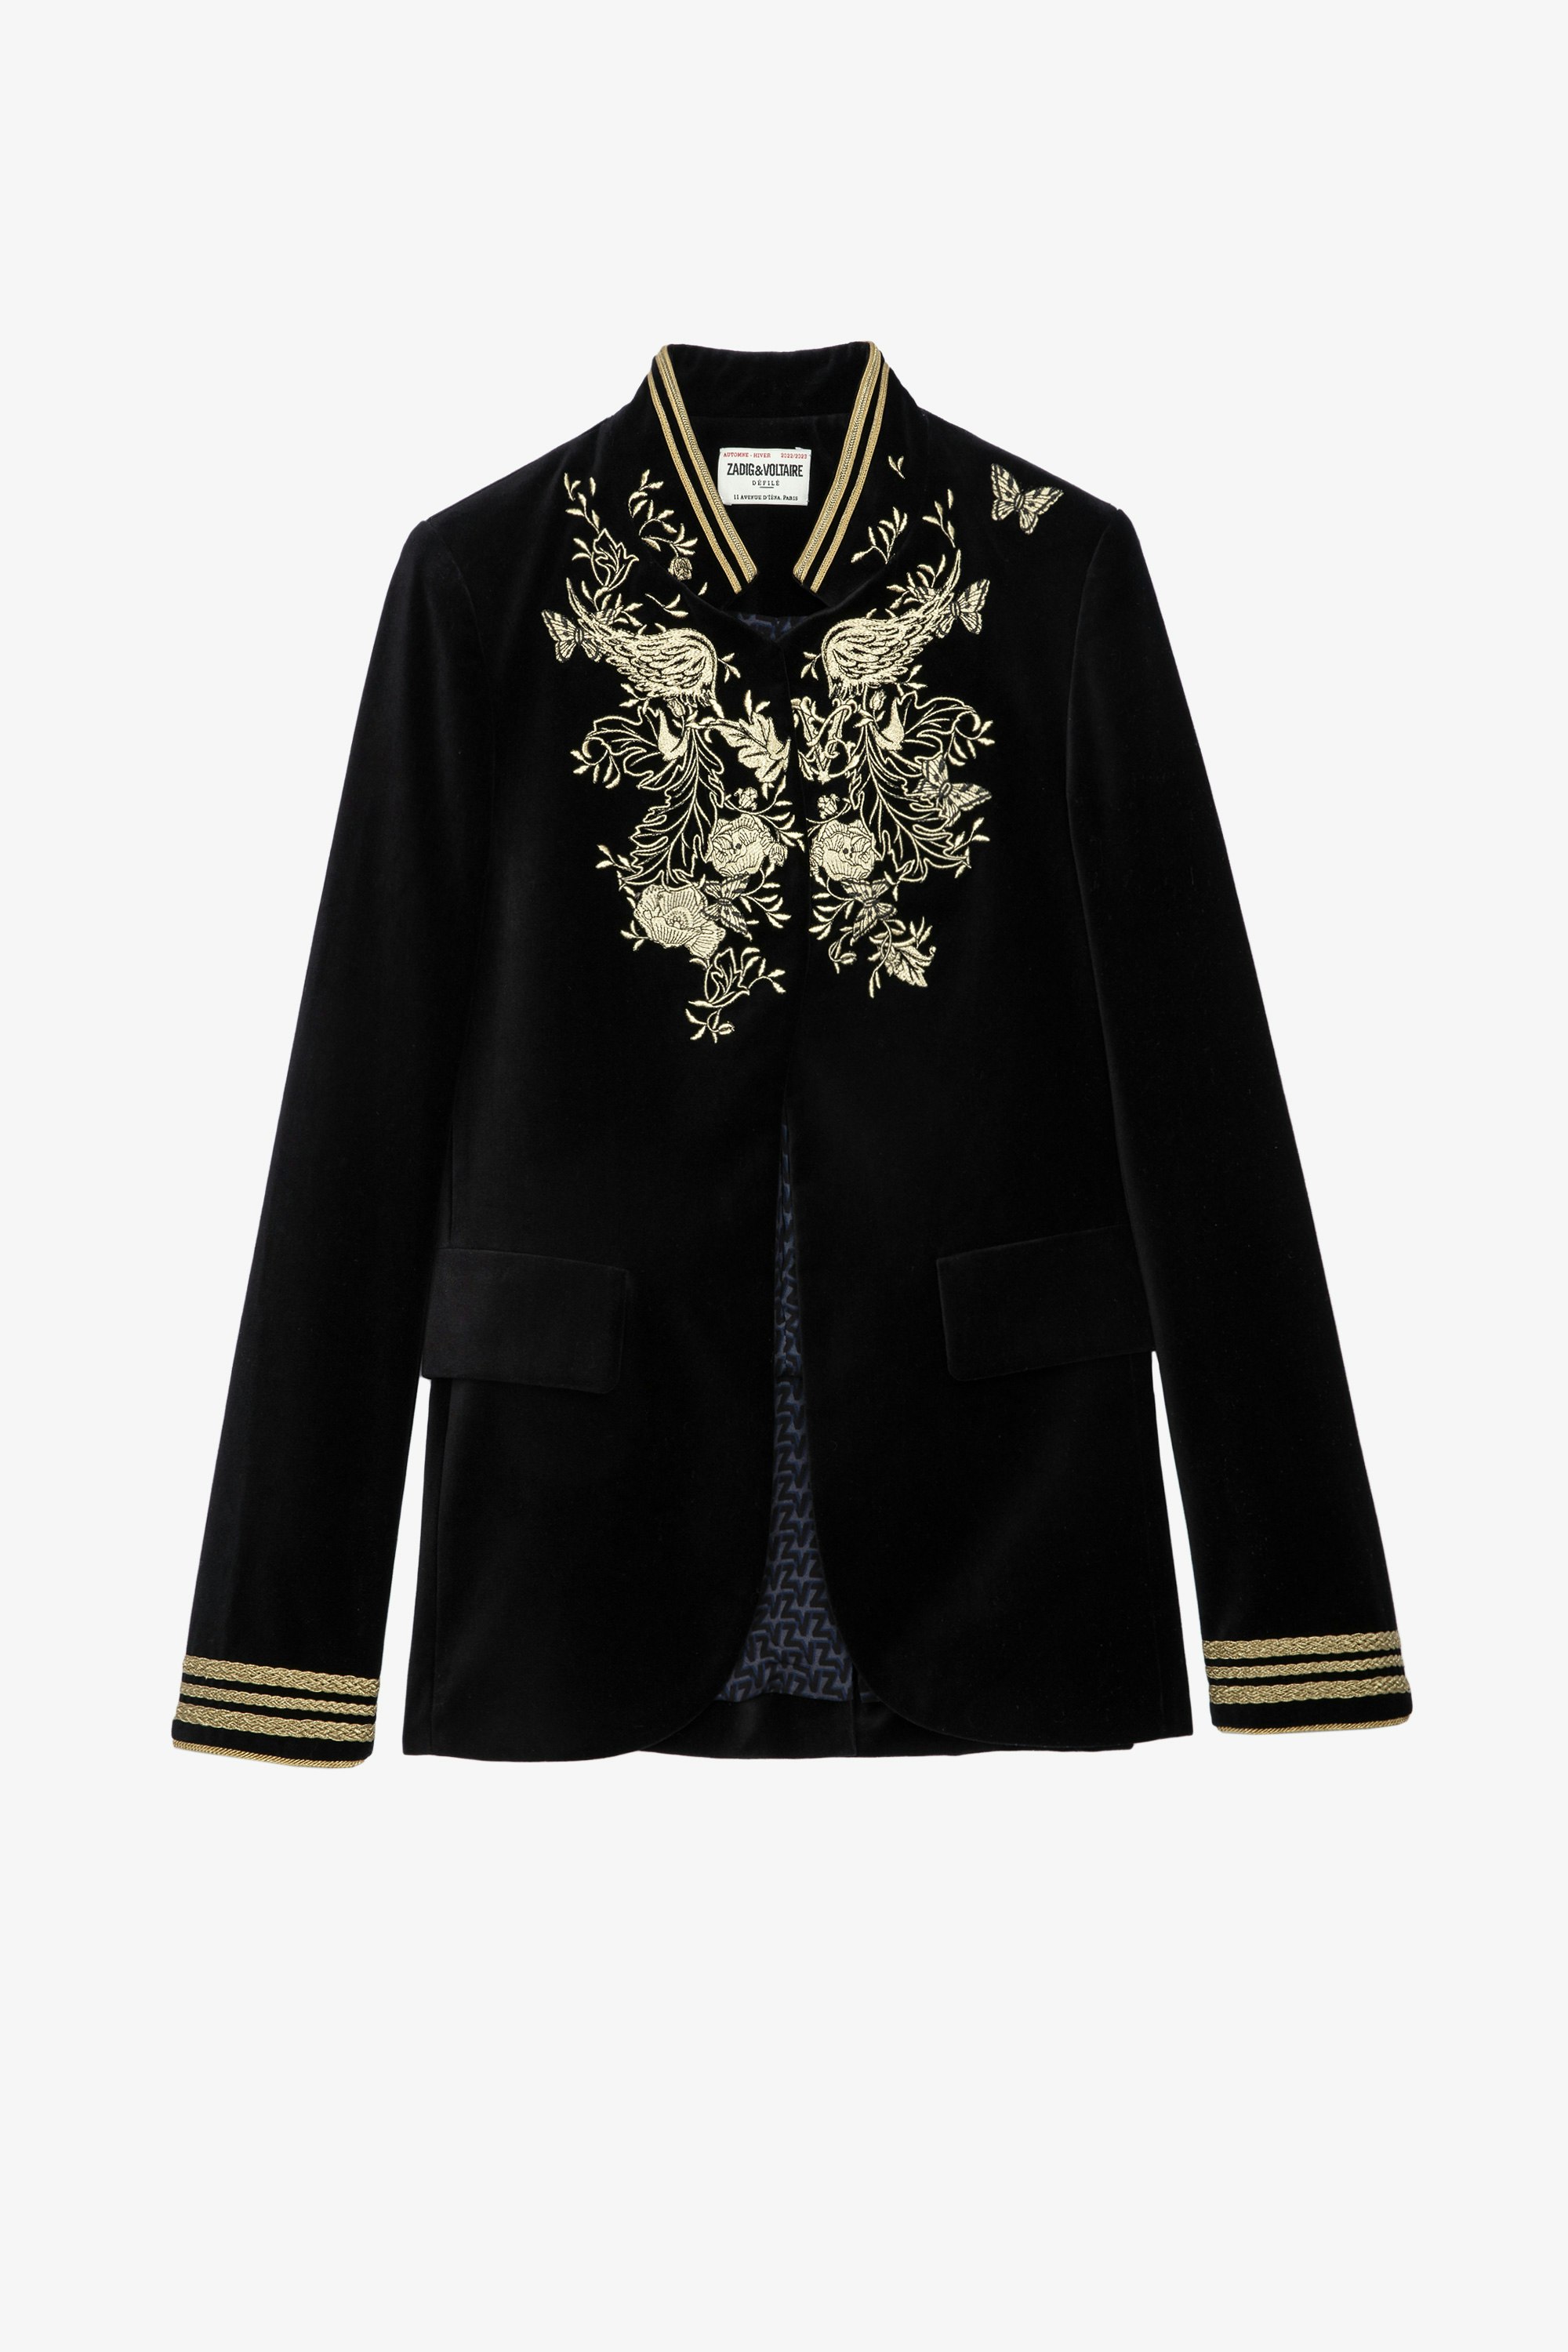 Very Velvet Jacket Women’s Very jacket in black velvet with gold embroidery 